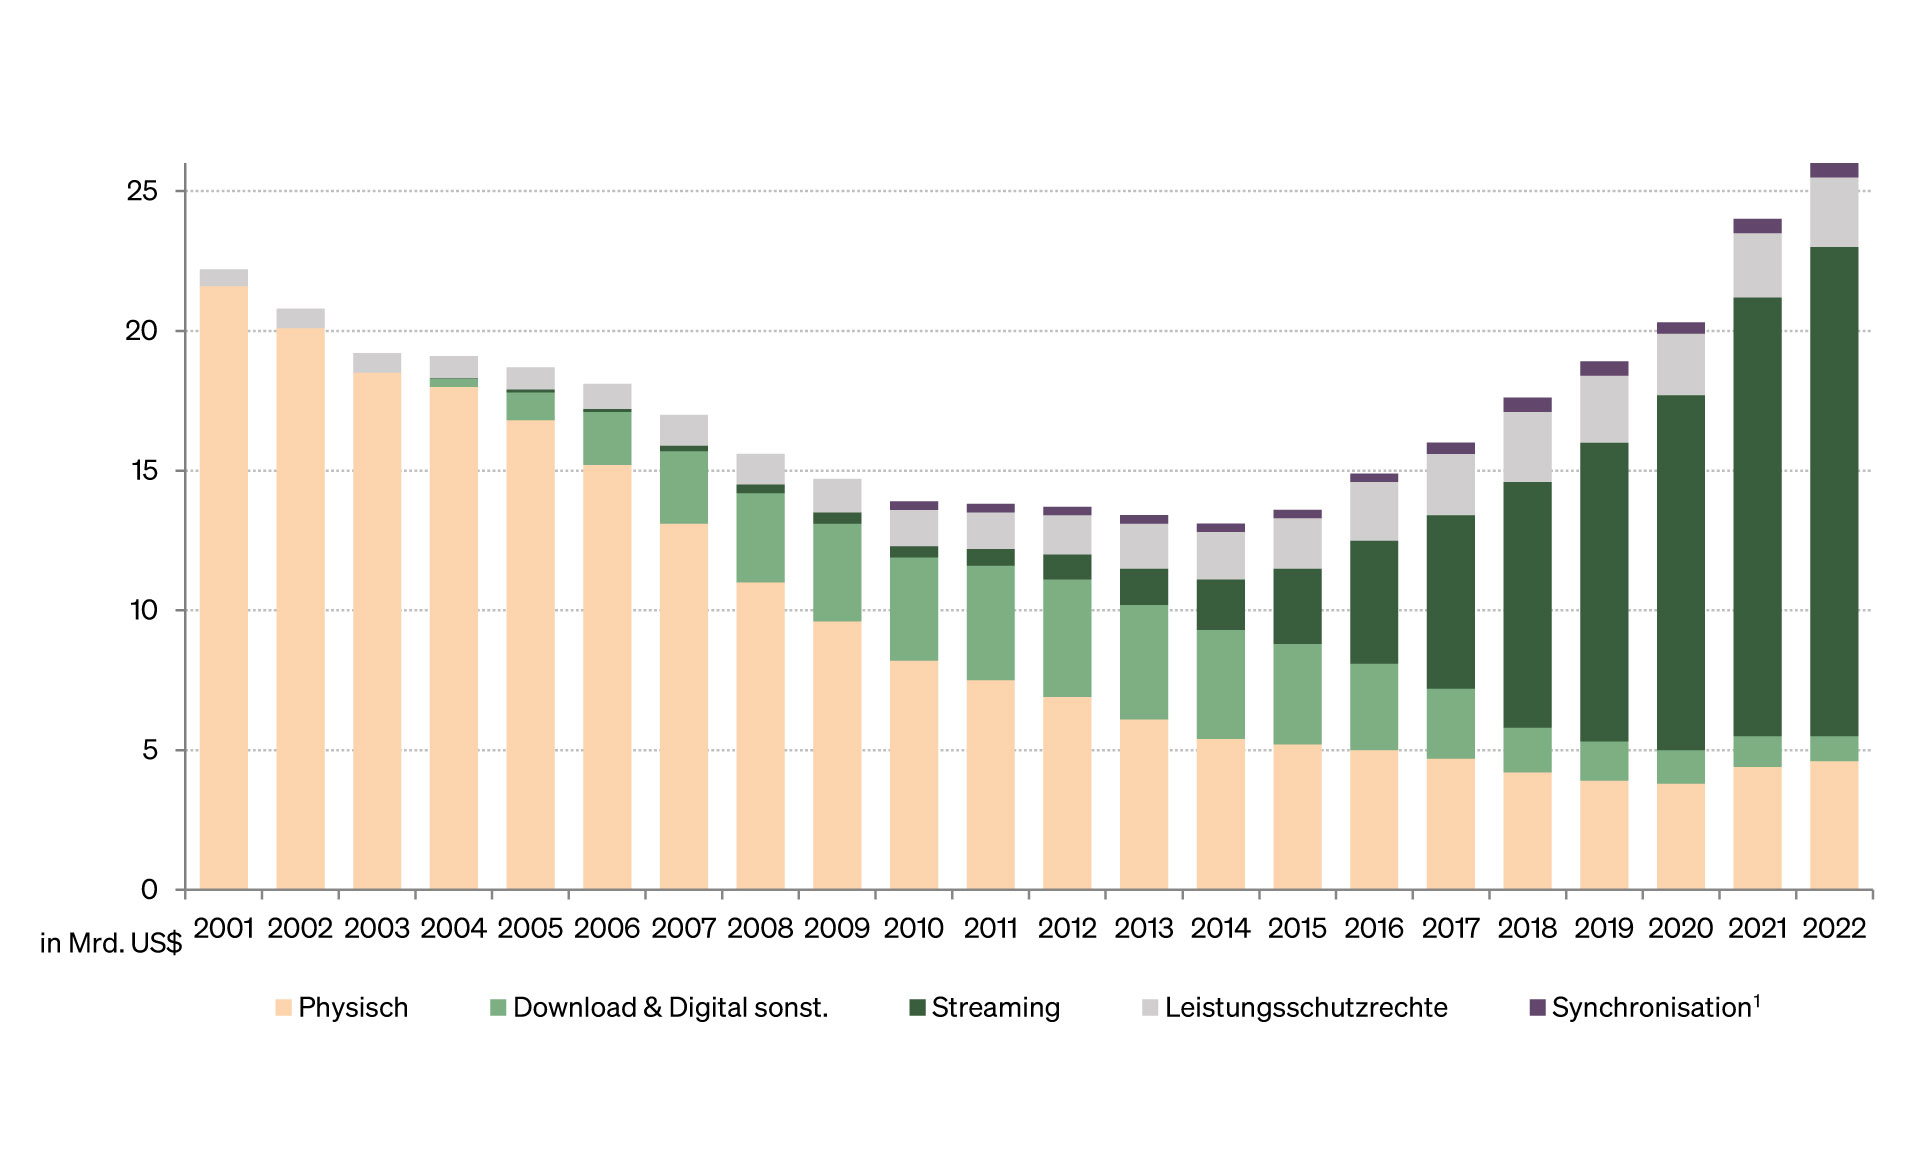 Abbildung: Entwicklung des weltweiten Umsatzes 2001 bis 2022